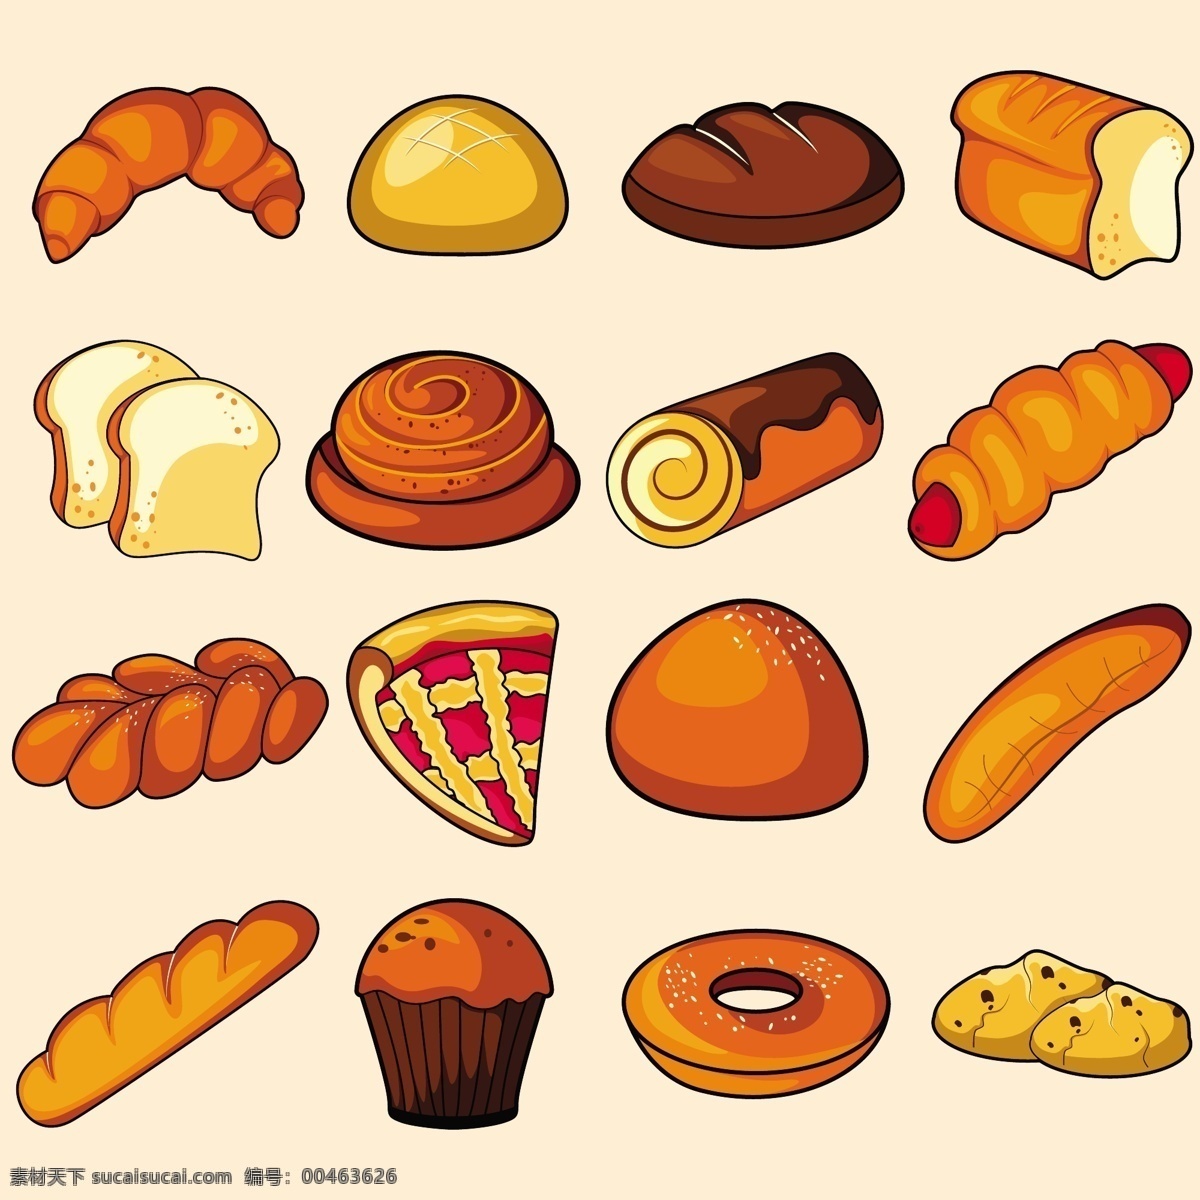 面包矢量素材 面包 面包矢量 面包素材 甜点 糕点 共享设计矢量 生活百科 餐饮美食